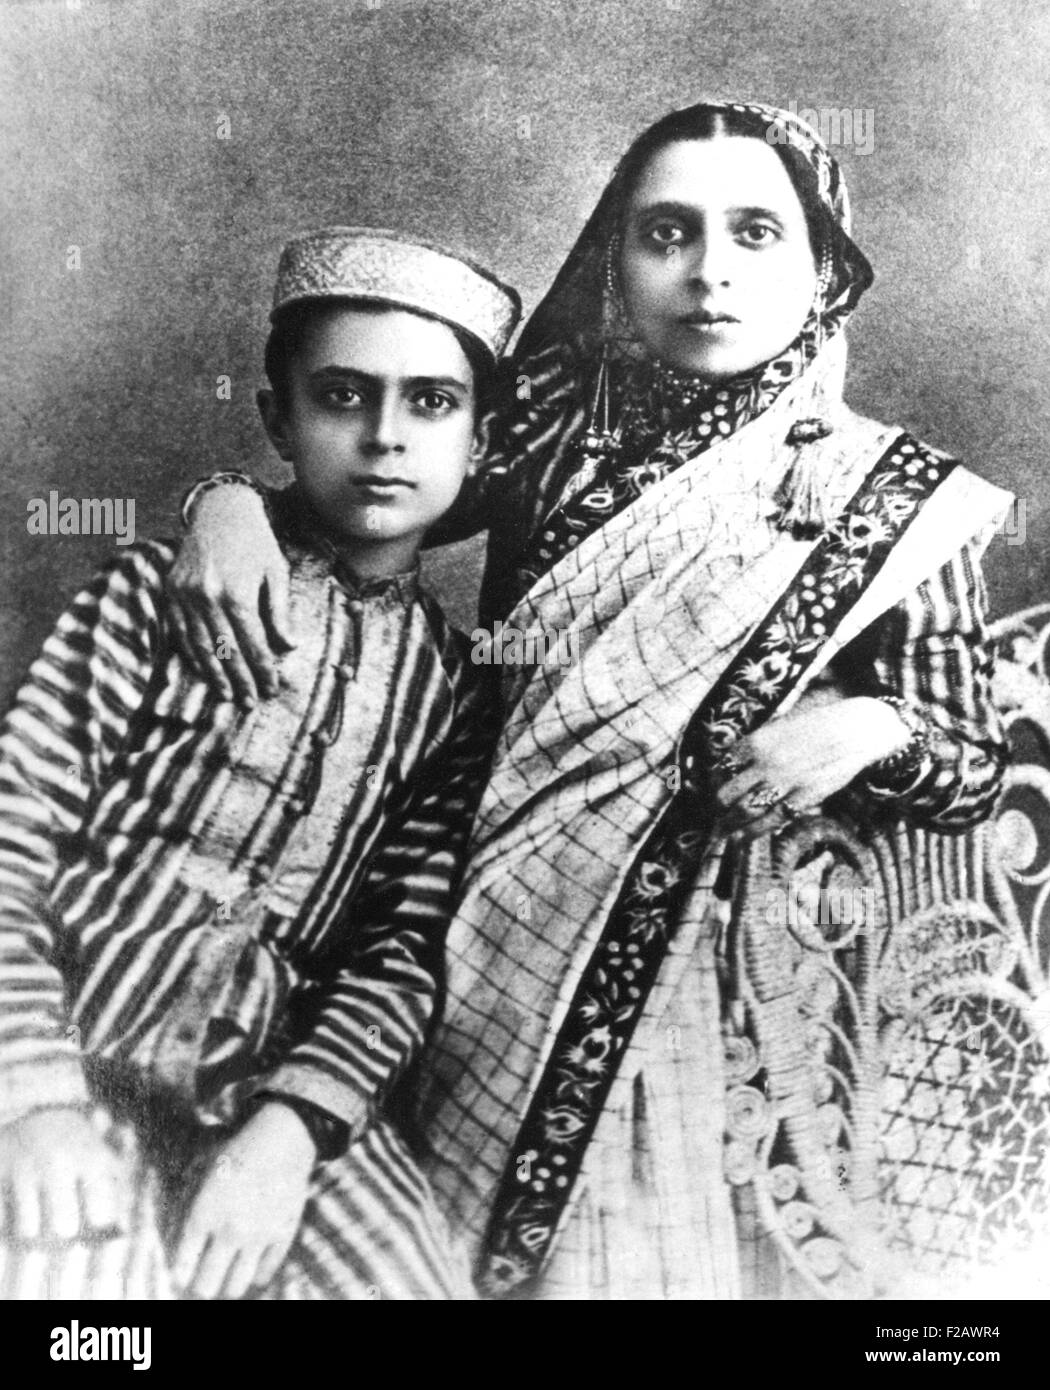 Jawaharlal Nehru und seine Mutter, Christopher Rani, ca. 1900. Jawaharlal war der einzige Sohn von Motilal Nehru, ein prominenter Rechtsanwalt Allahabad. (CSU 2015 11 1231) Stockfoto